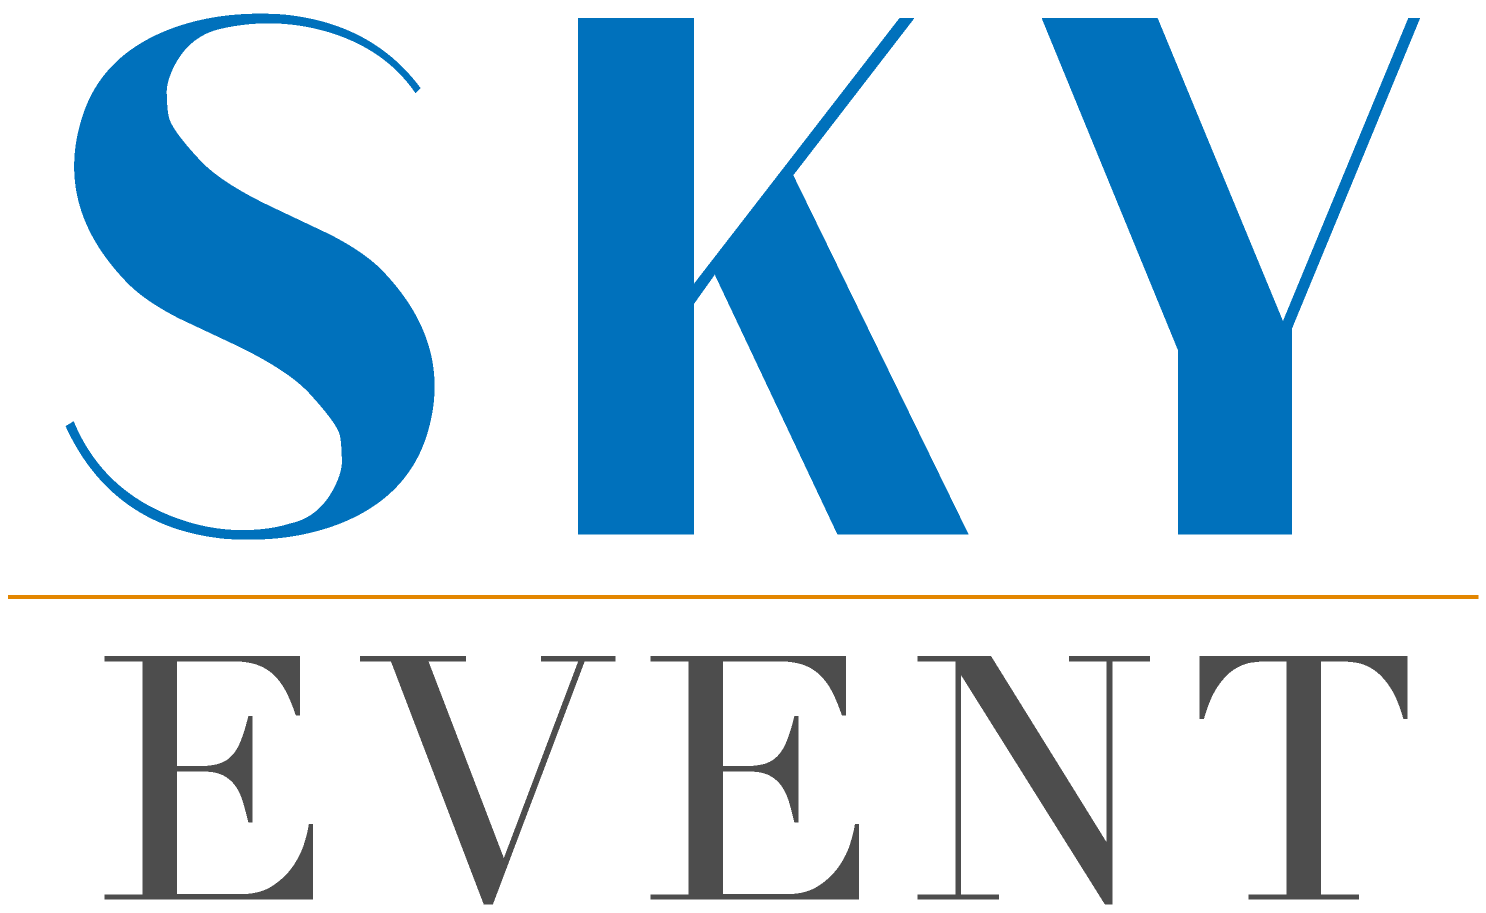 Sky Event